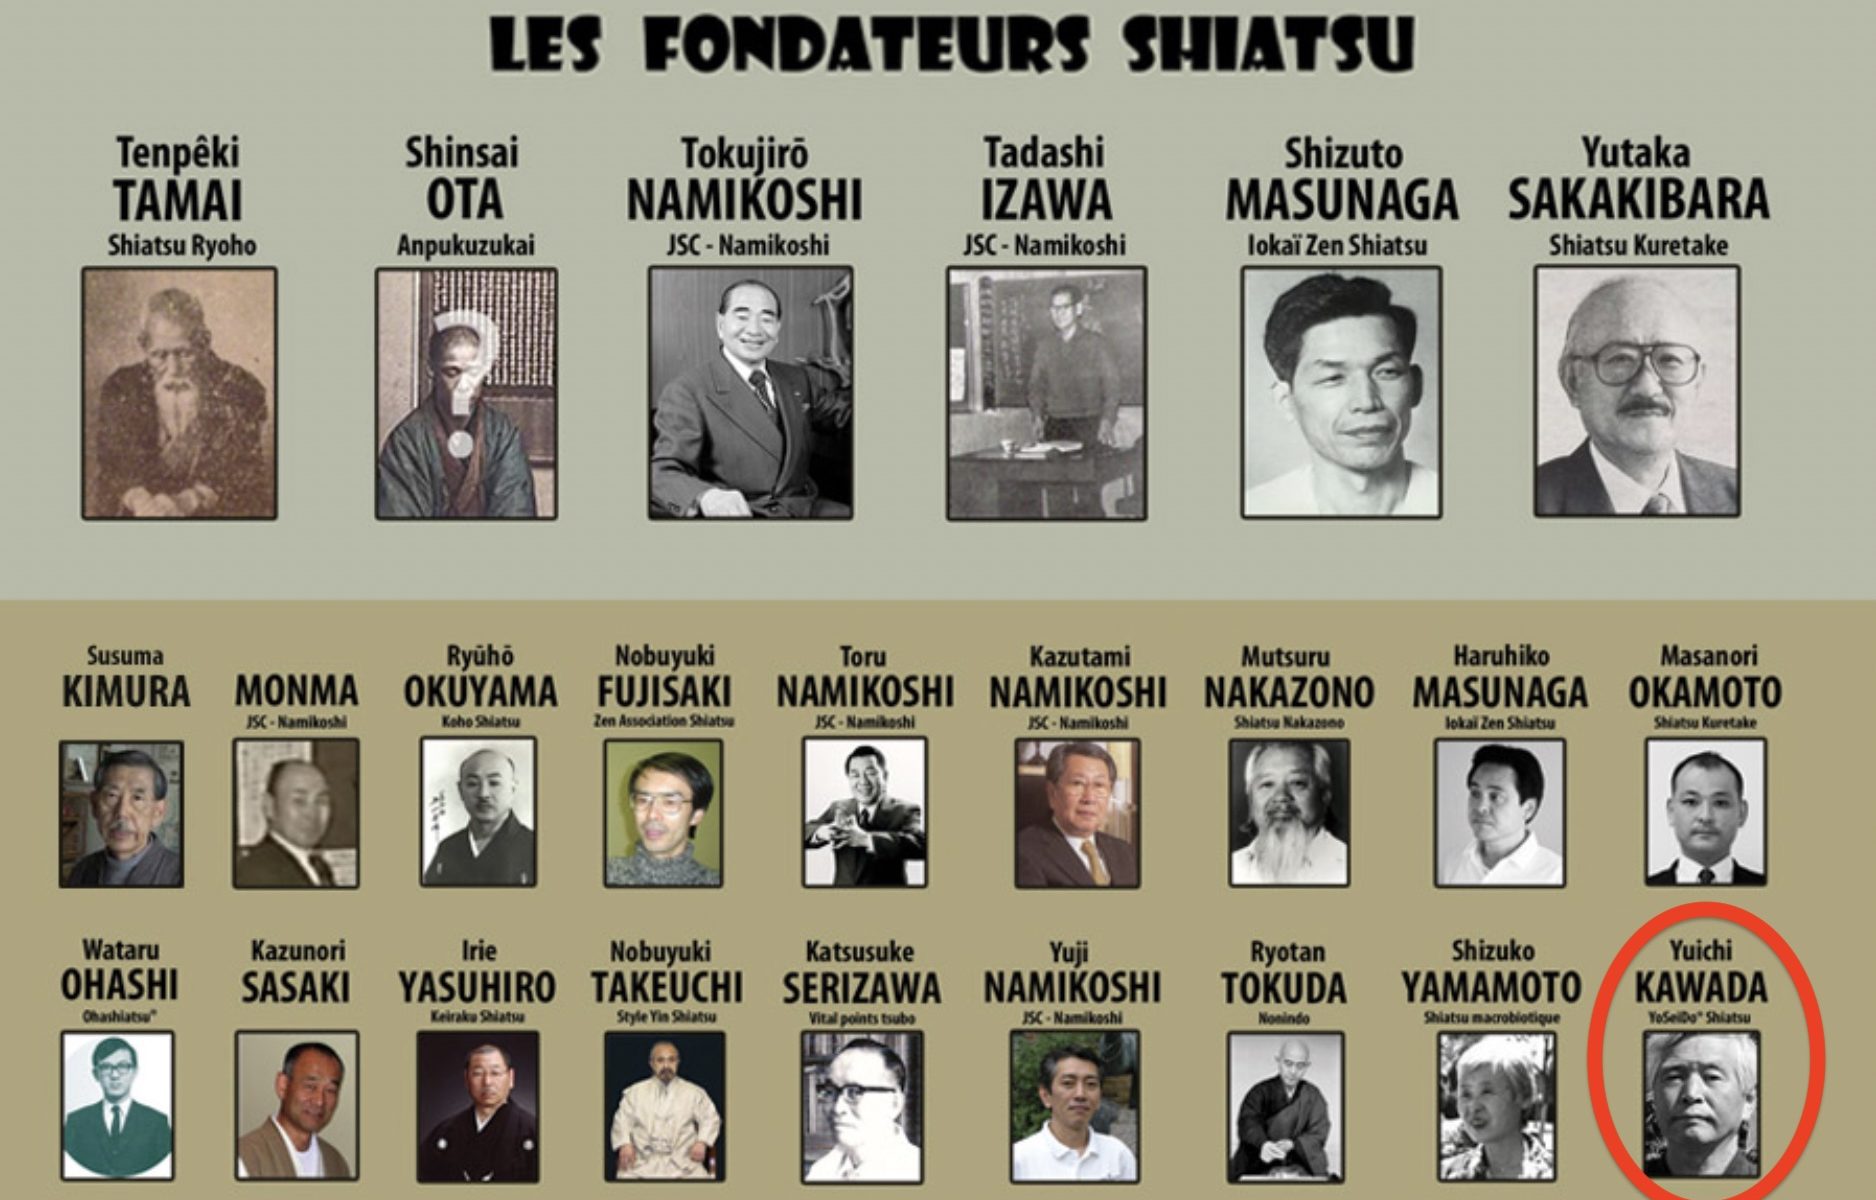 Les pères fondateurs du Shiatsu